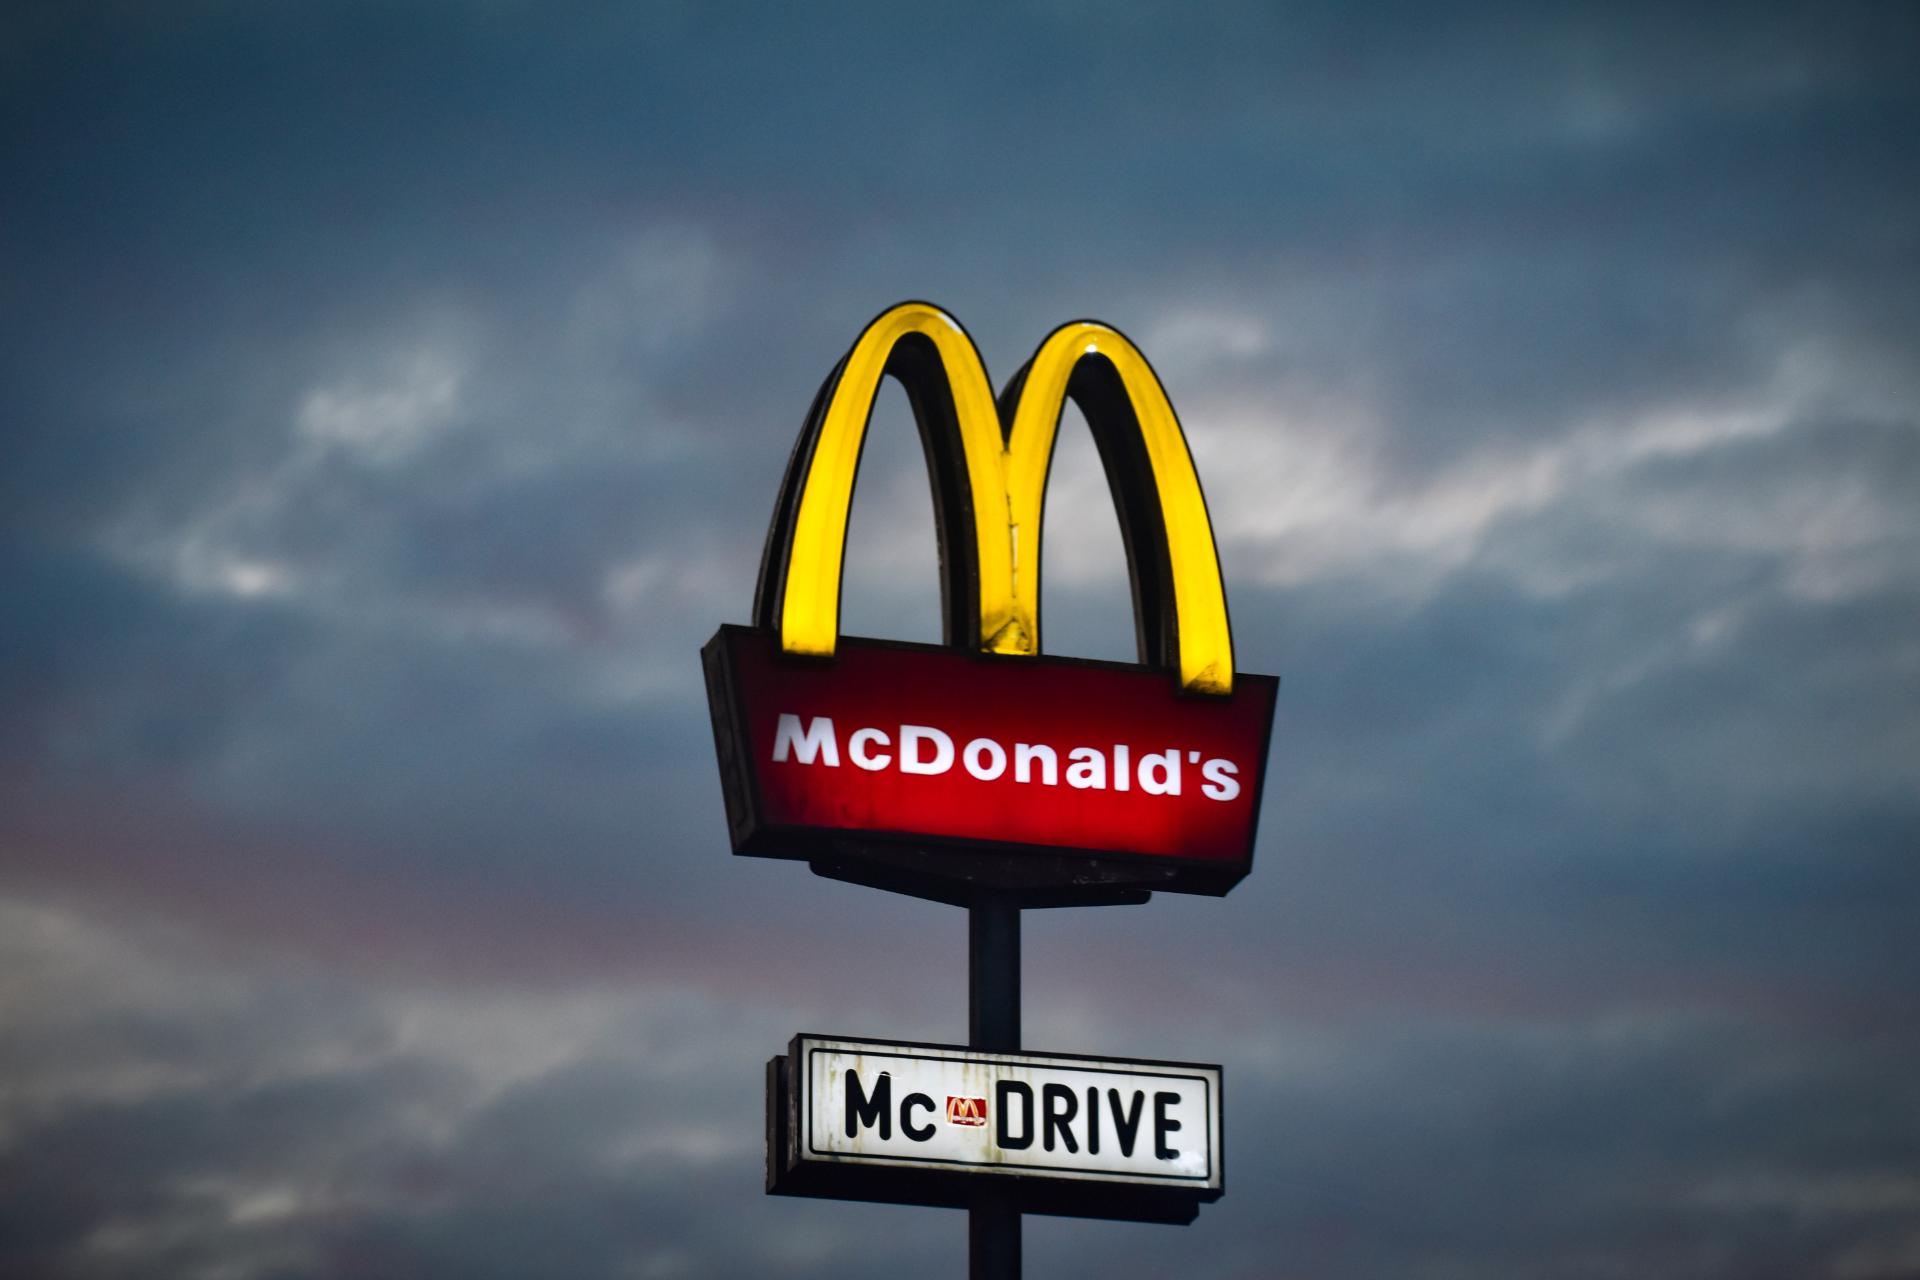 El nombre y logo de McDonalds es conocido a nivel mundial y es inconfundible. Es a lo que debes aspirar cuando creas un nombre para negocio de postres